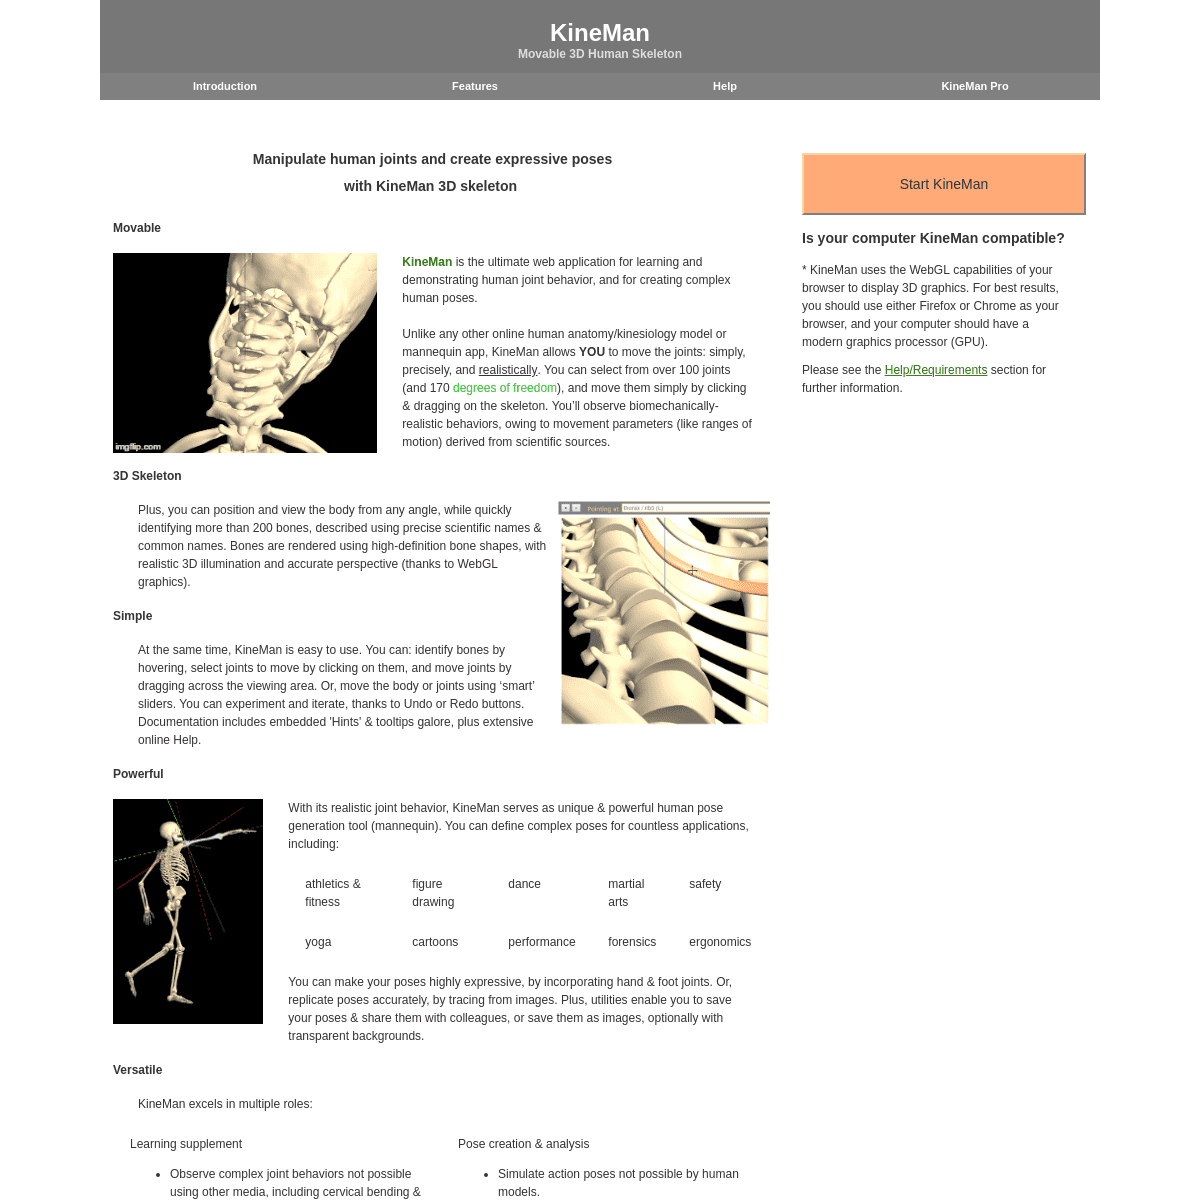 KineMan: Movable 3D Skeleton